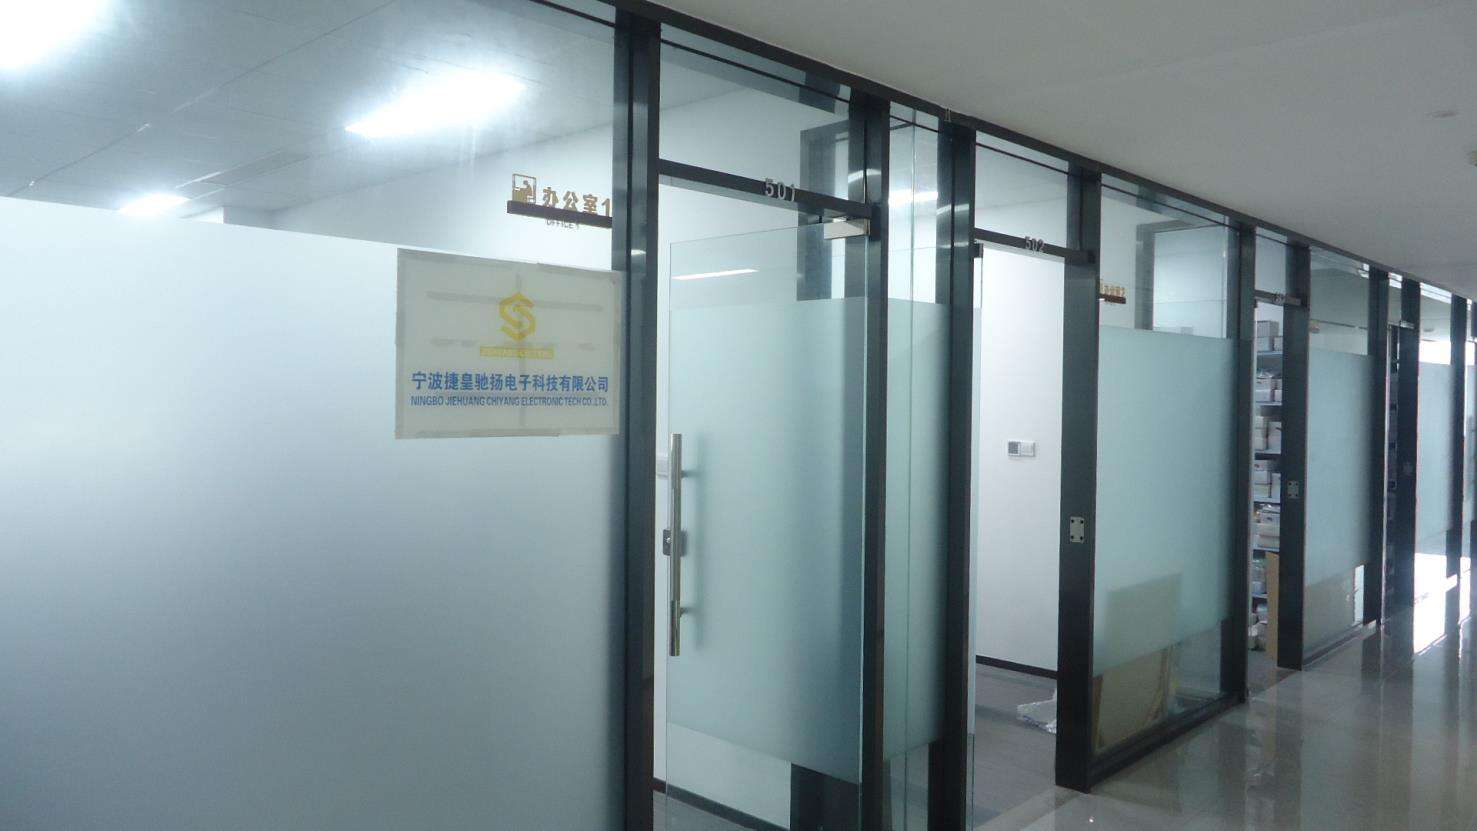 Ningbo Jiehuang Chiyang Eelctronic Tech Co., Ltd